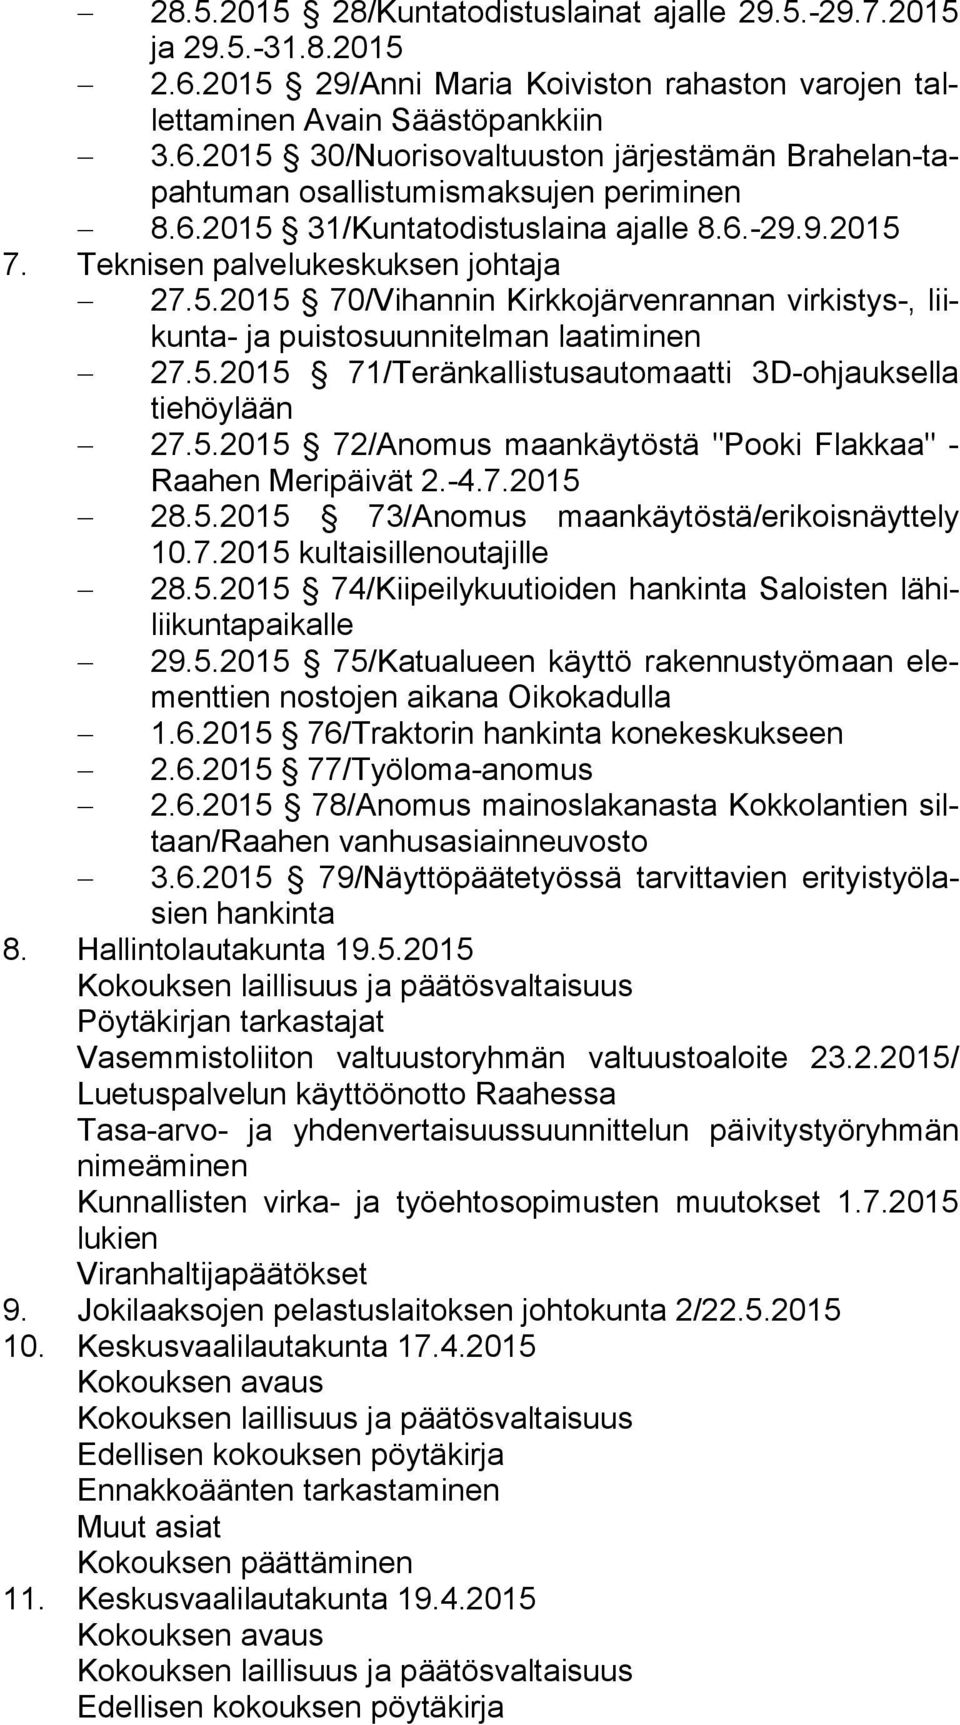 5.2015 72/Anomus maankäytöstä "Pooki Flakkaa" - Raa hen Meripäivät 2.-4.7.2015 28.5.2015 73/Anomus maankäytöstä/erikoisnäyttely 10.7.2015 kultaisillenoutajille 28.5.2015 74/Kiipeilykuutioiden hankinta Saloisten lä hilii kun ta pai kal le 29.